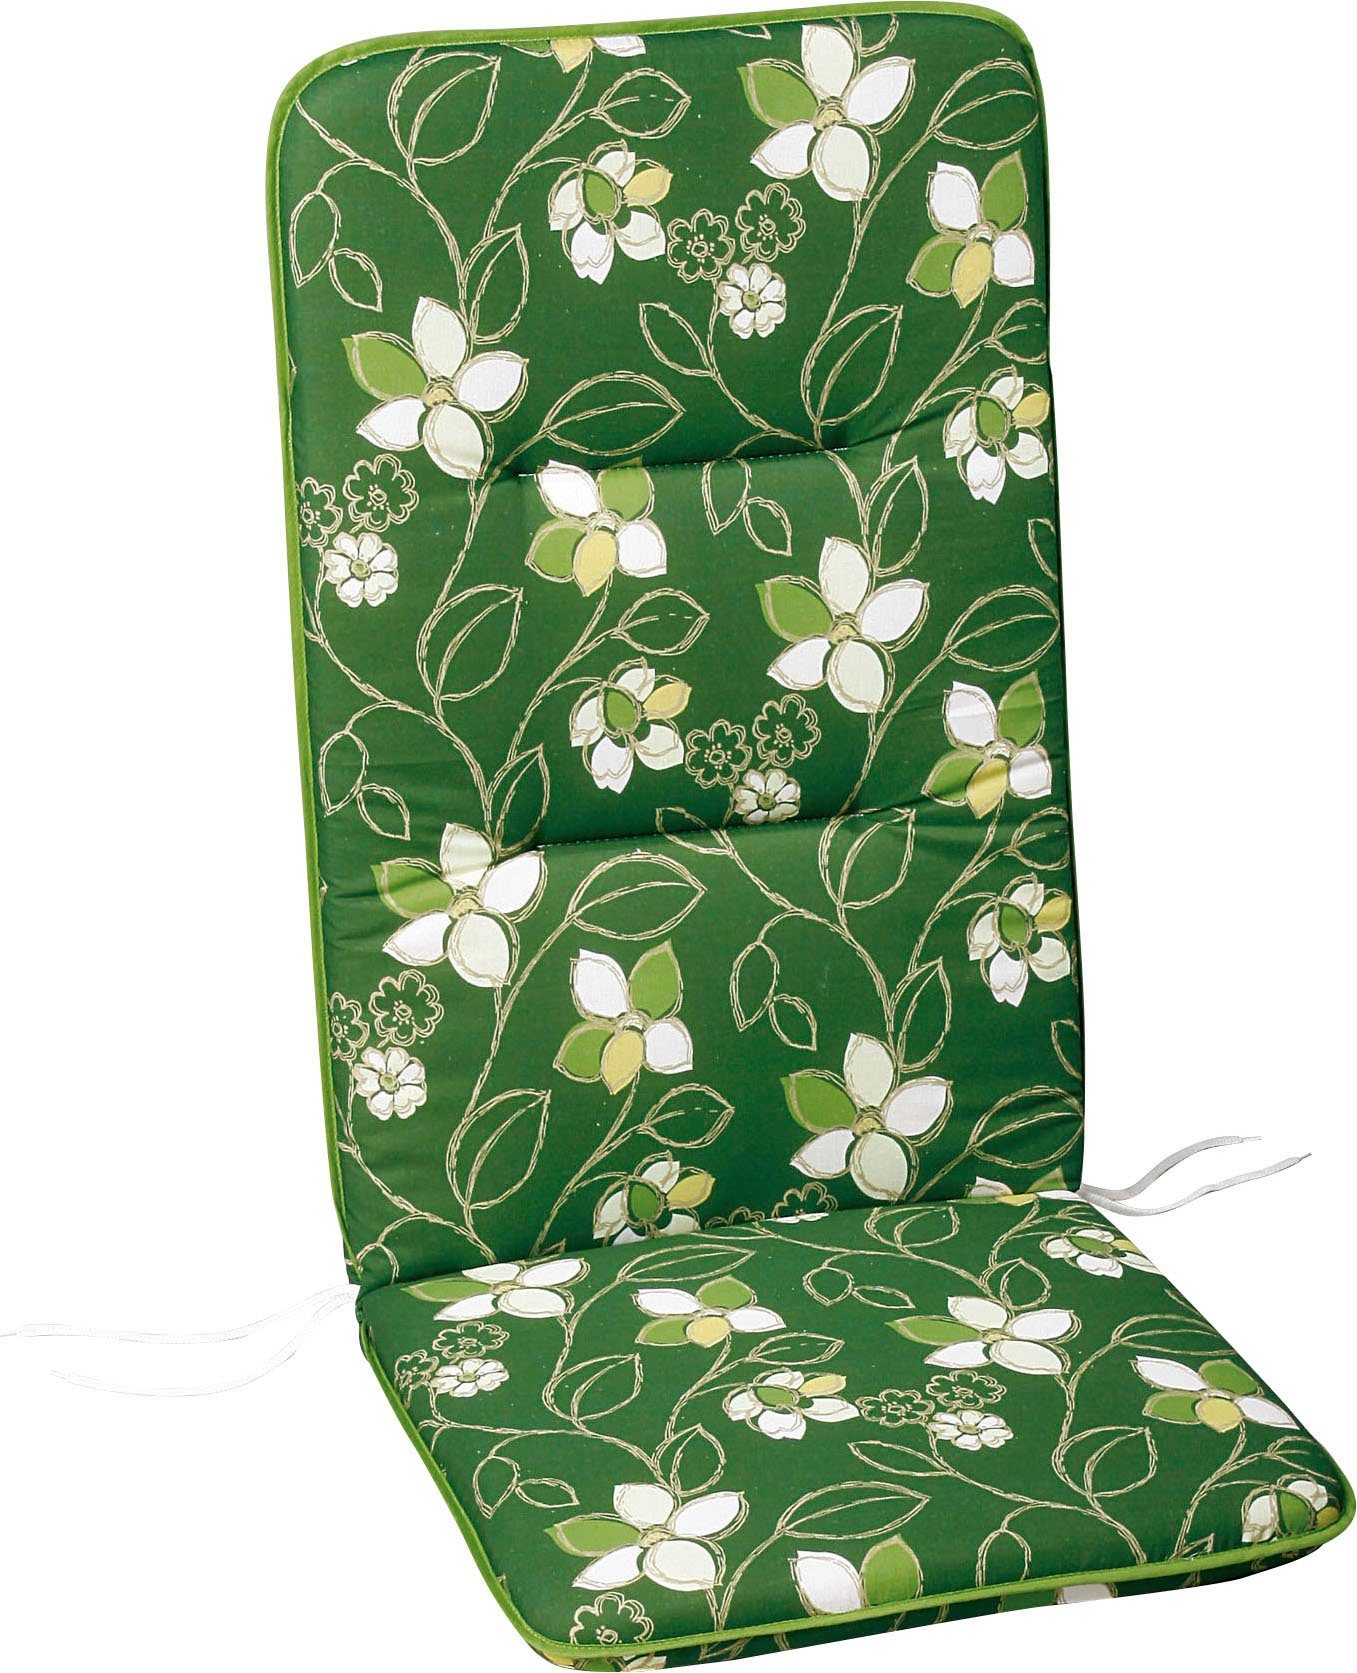 grün/beige/weiß Sesselauflage Best gemustert